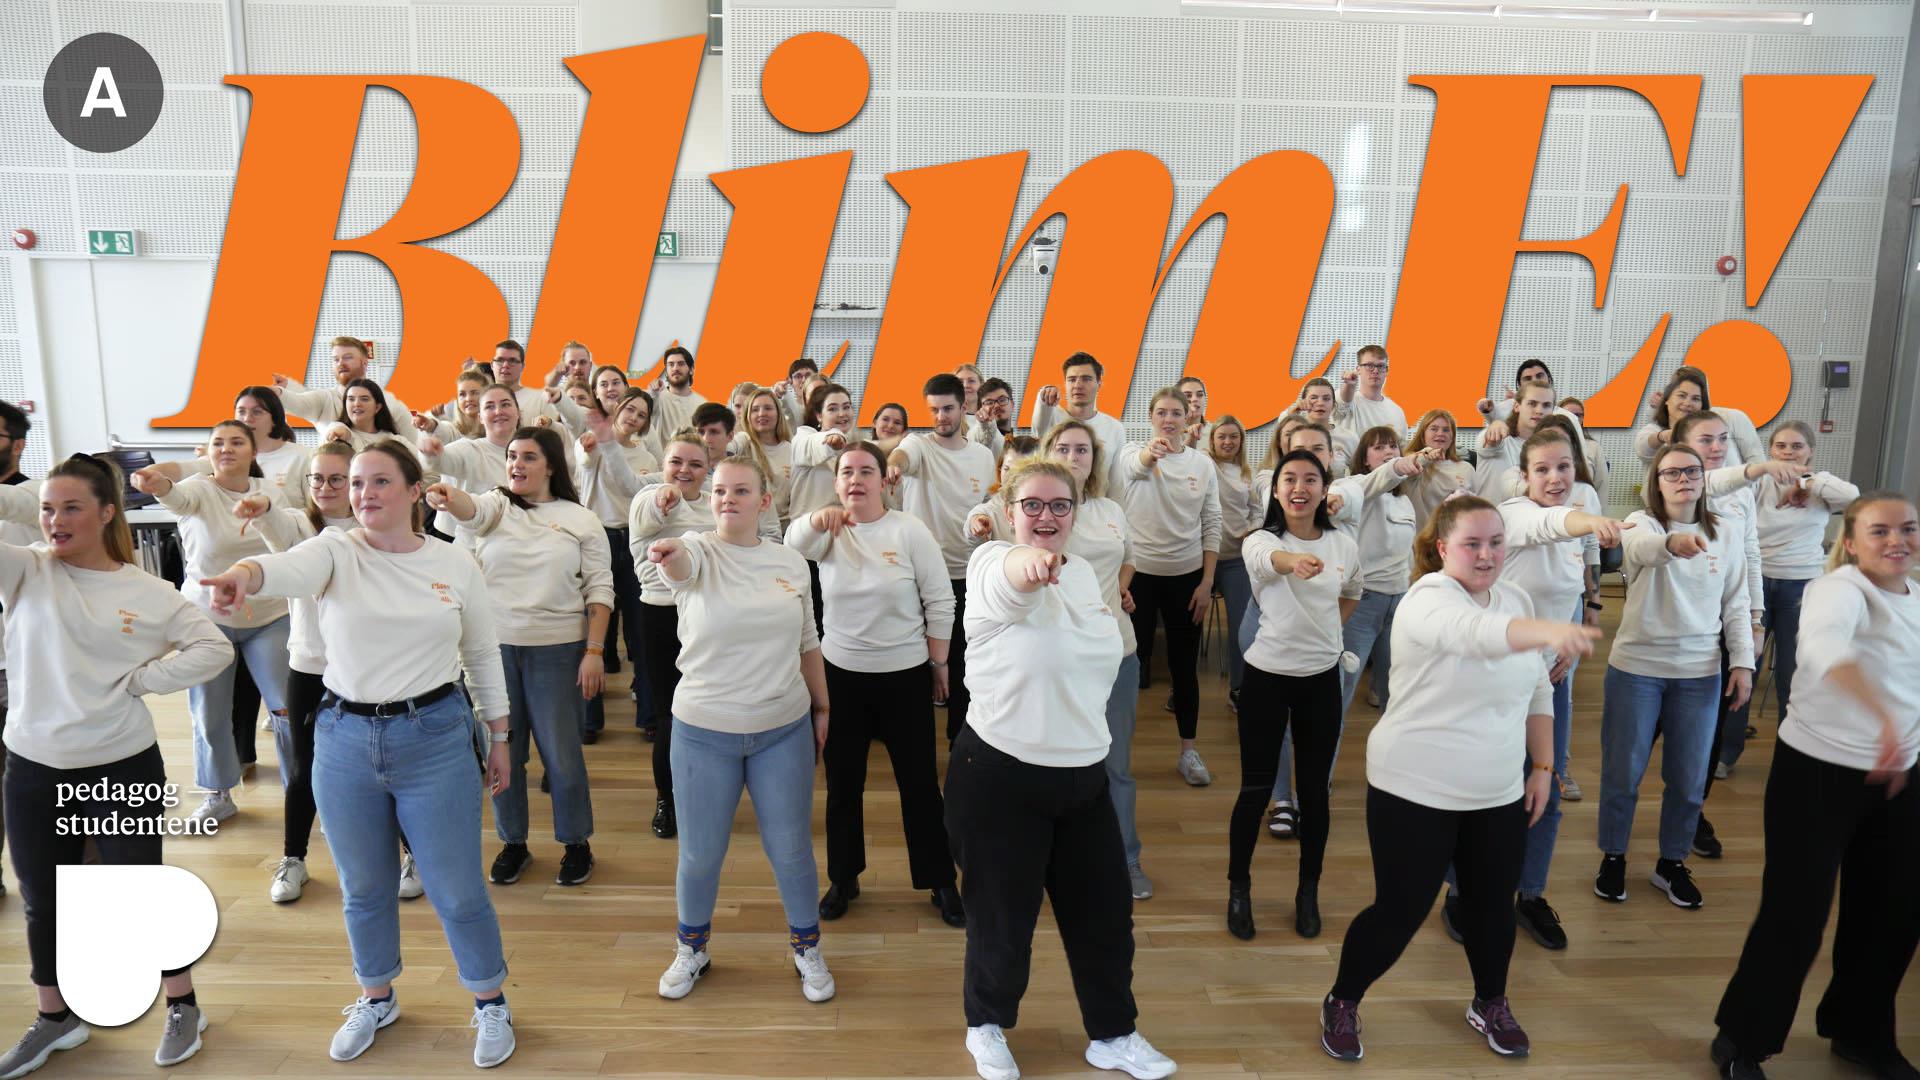 Gruppe mennesker med samme genser er avbildet mitt i en dans. Øverst i bildet står det med store bokstaver "BlimE!". Foto med tekst. 